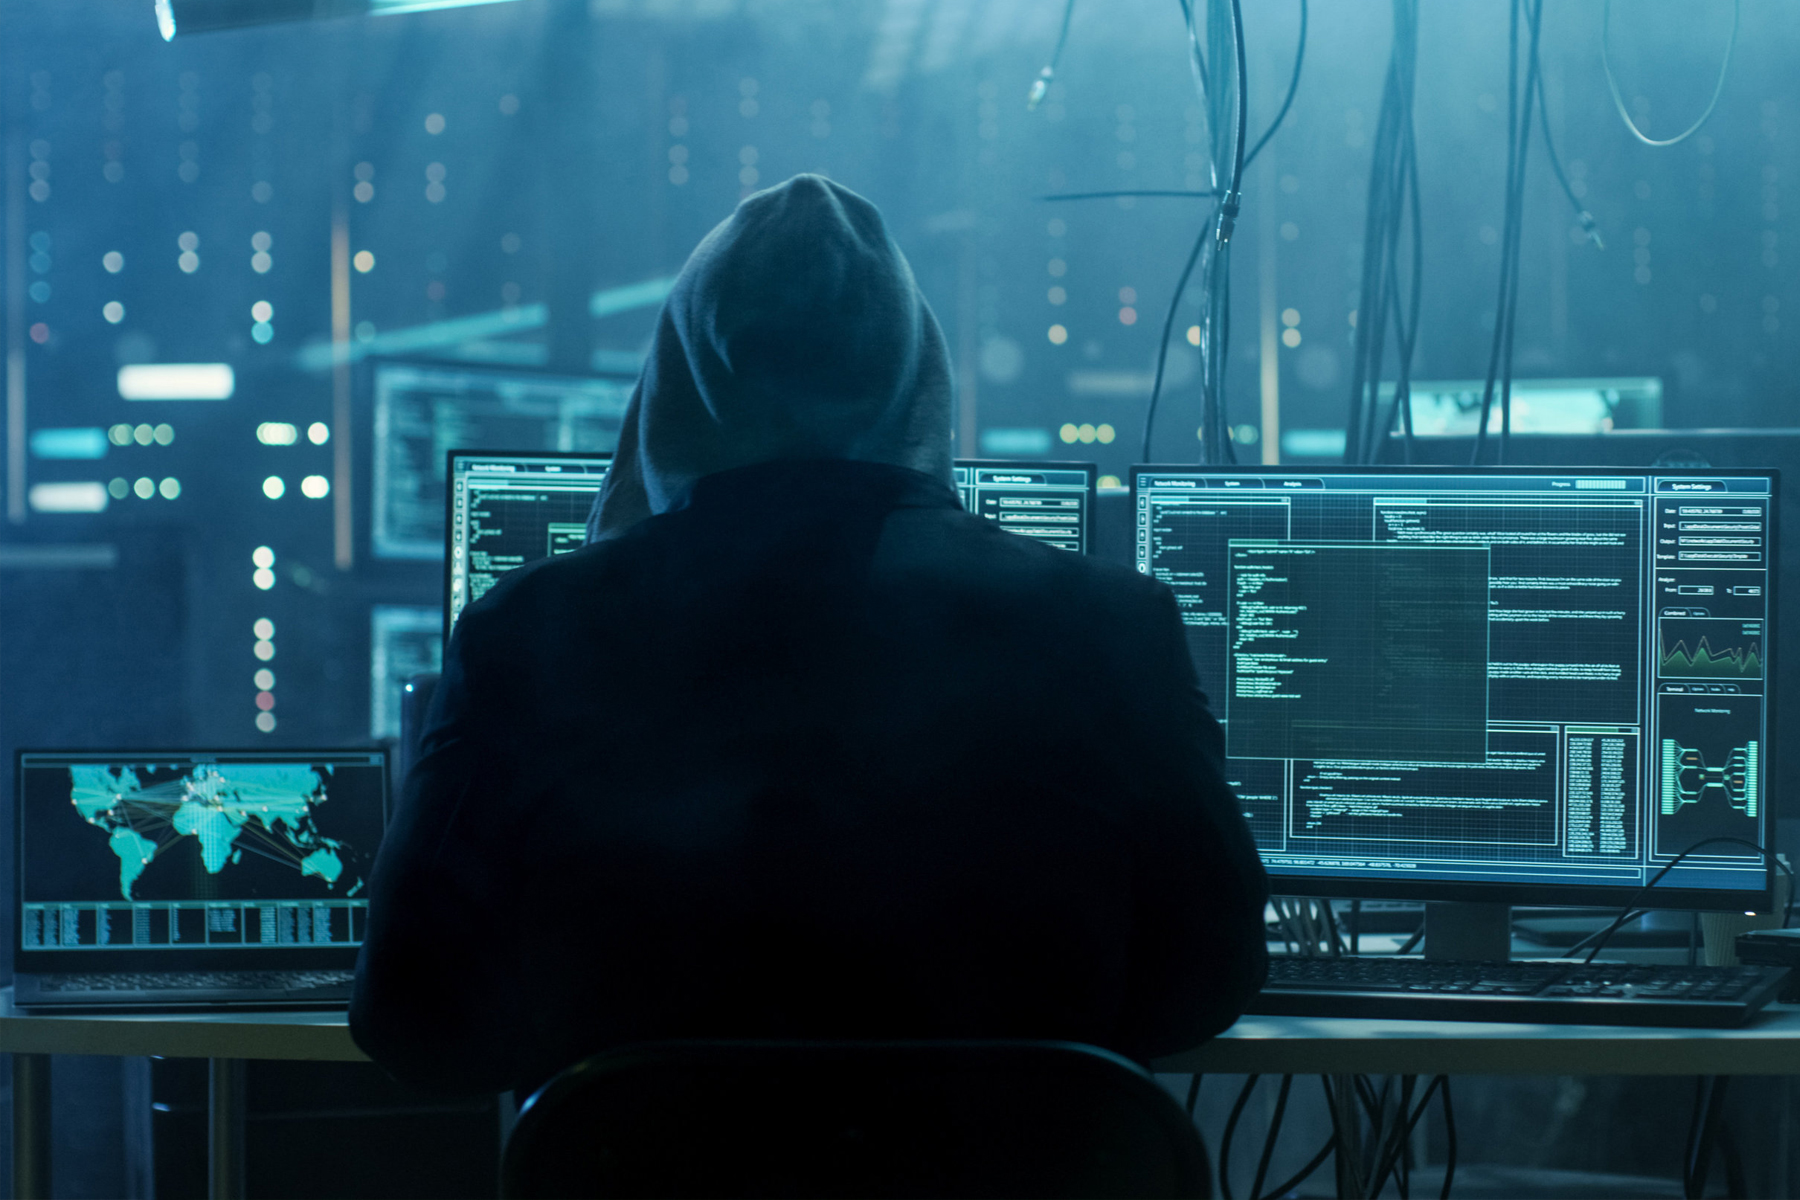 Icoプラットフォーム 700万ドルのハッキングを受け返還を約束 暗号通貨まとめ Crypt Currency Camp